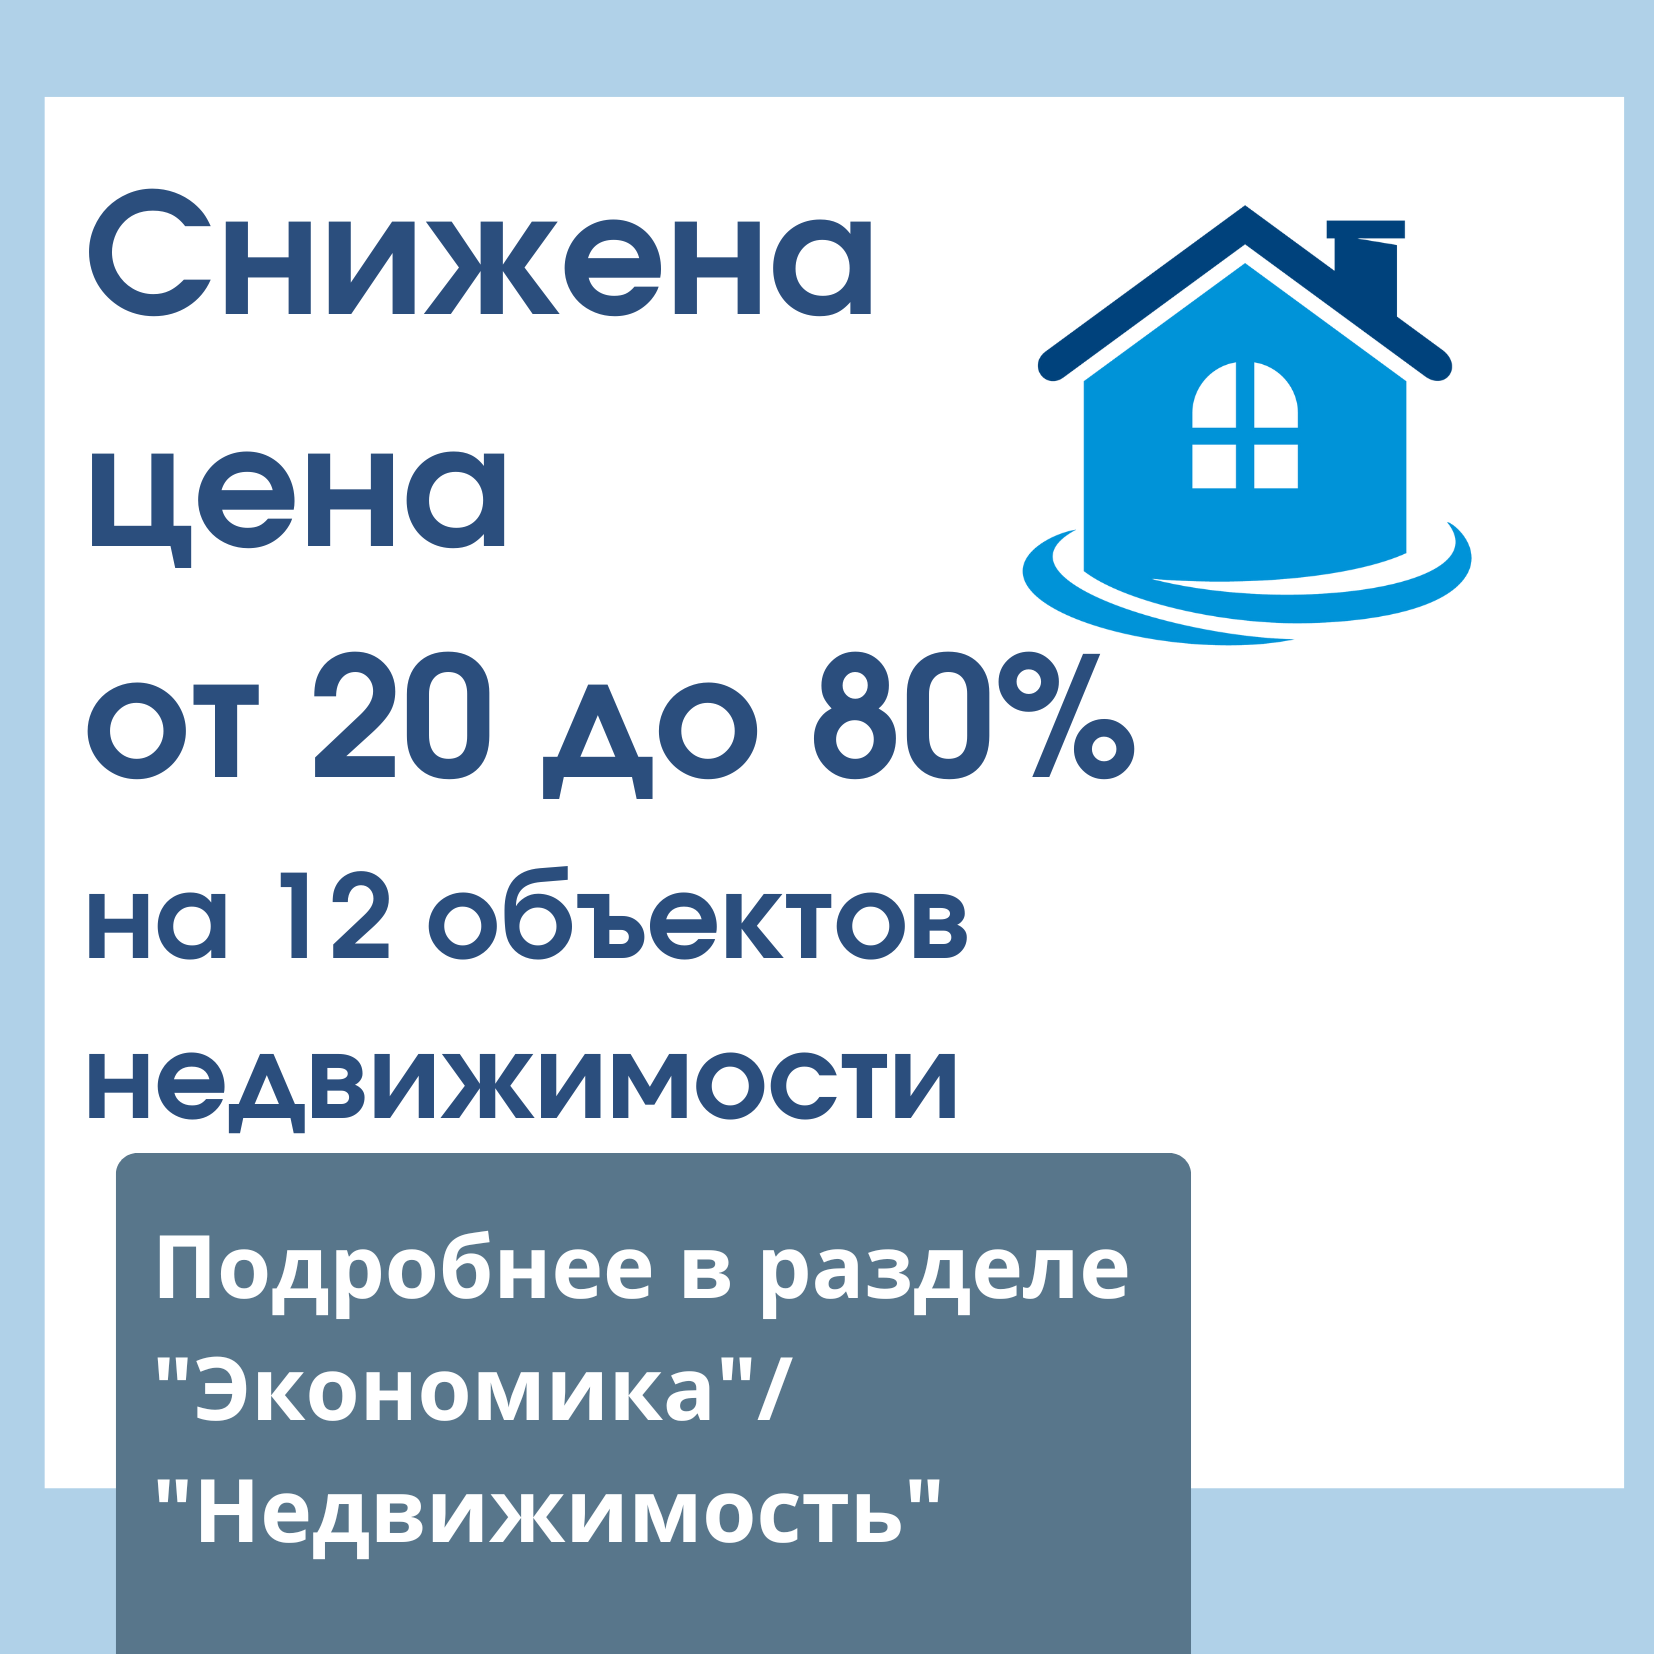 Снижена цена от 20% до 80% на 12 объектов недвижимости